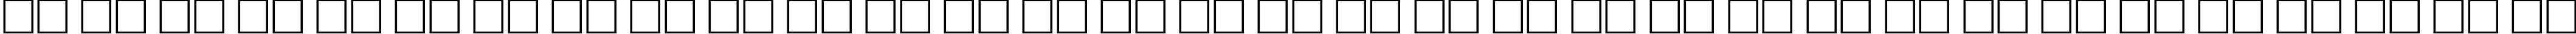 Пример написания русского алфавита шрифтом Antiqua Bold65b